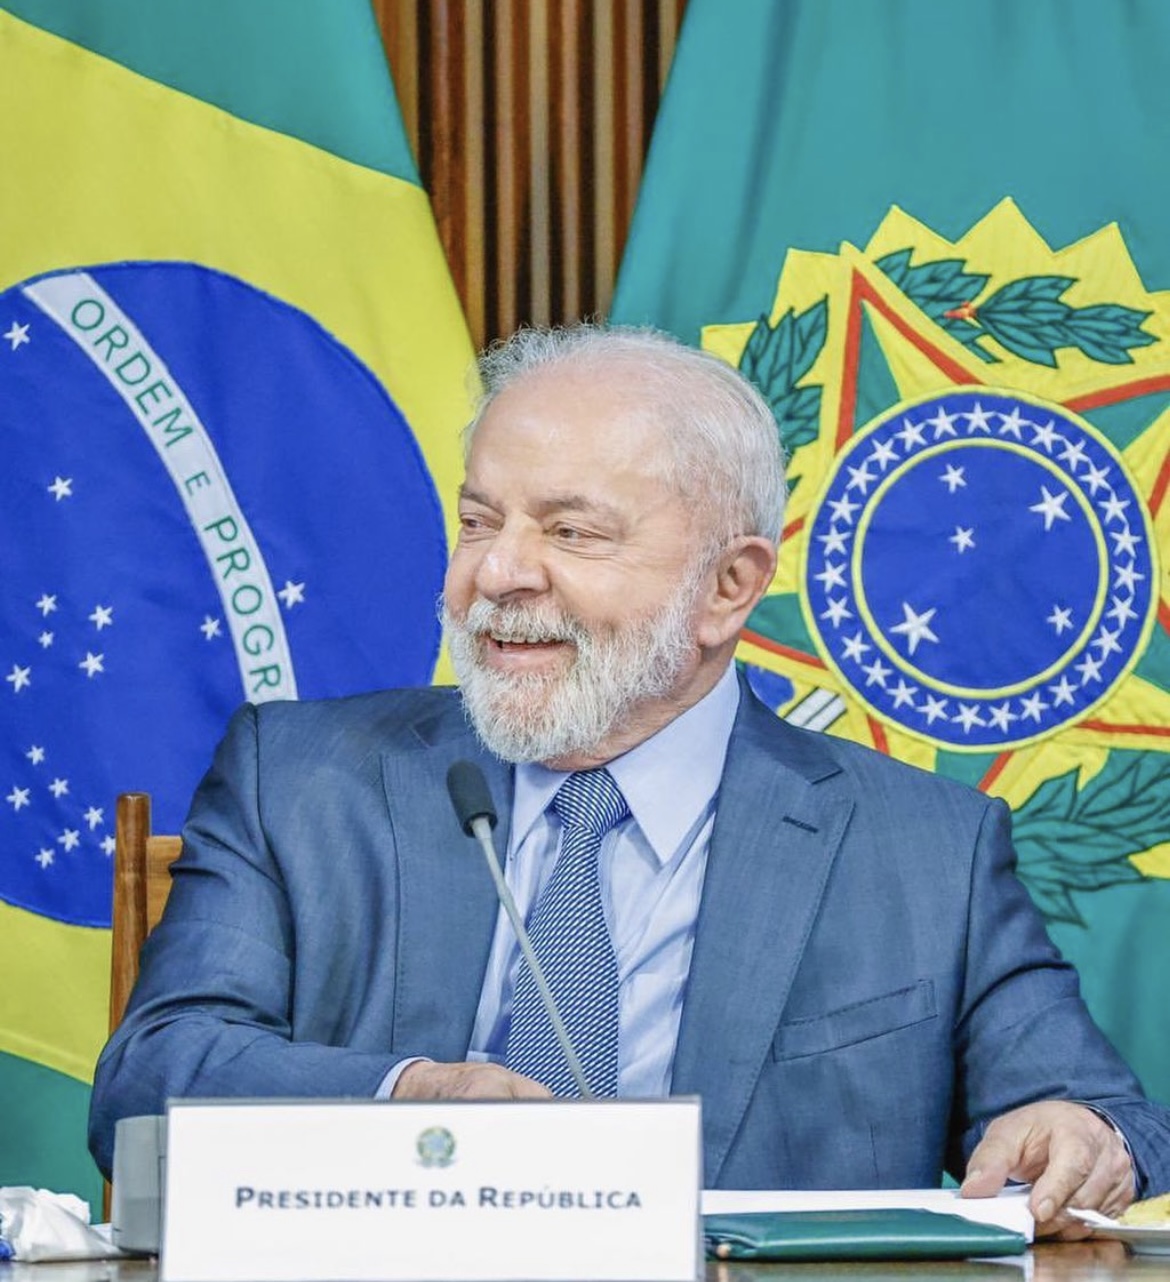 Lula chora e diz que queria “foder” Moro quando estava preso